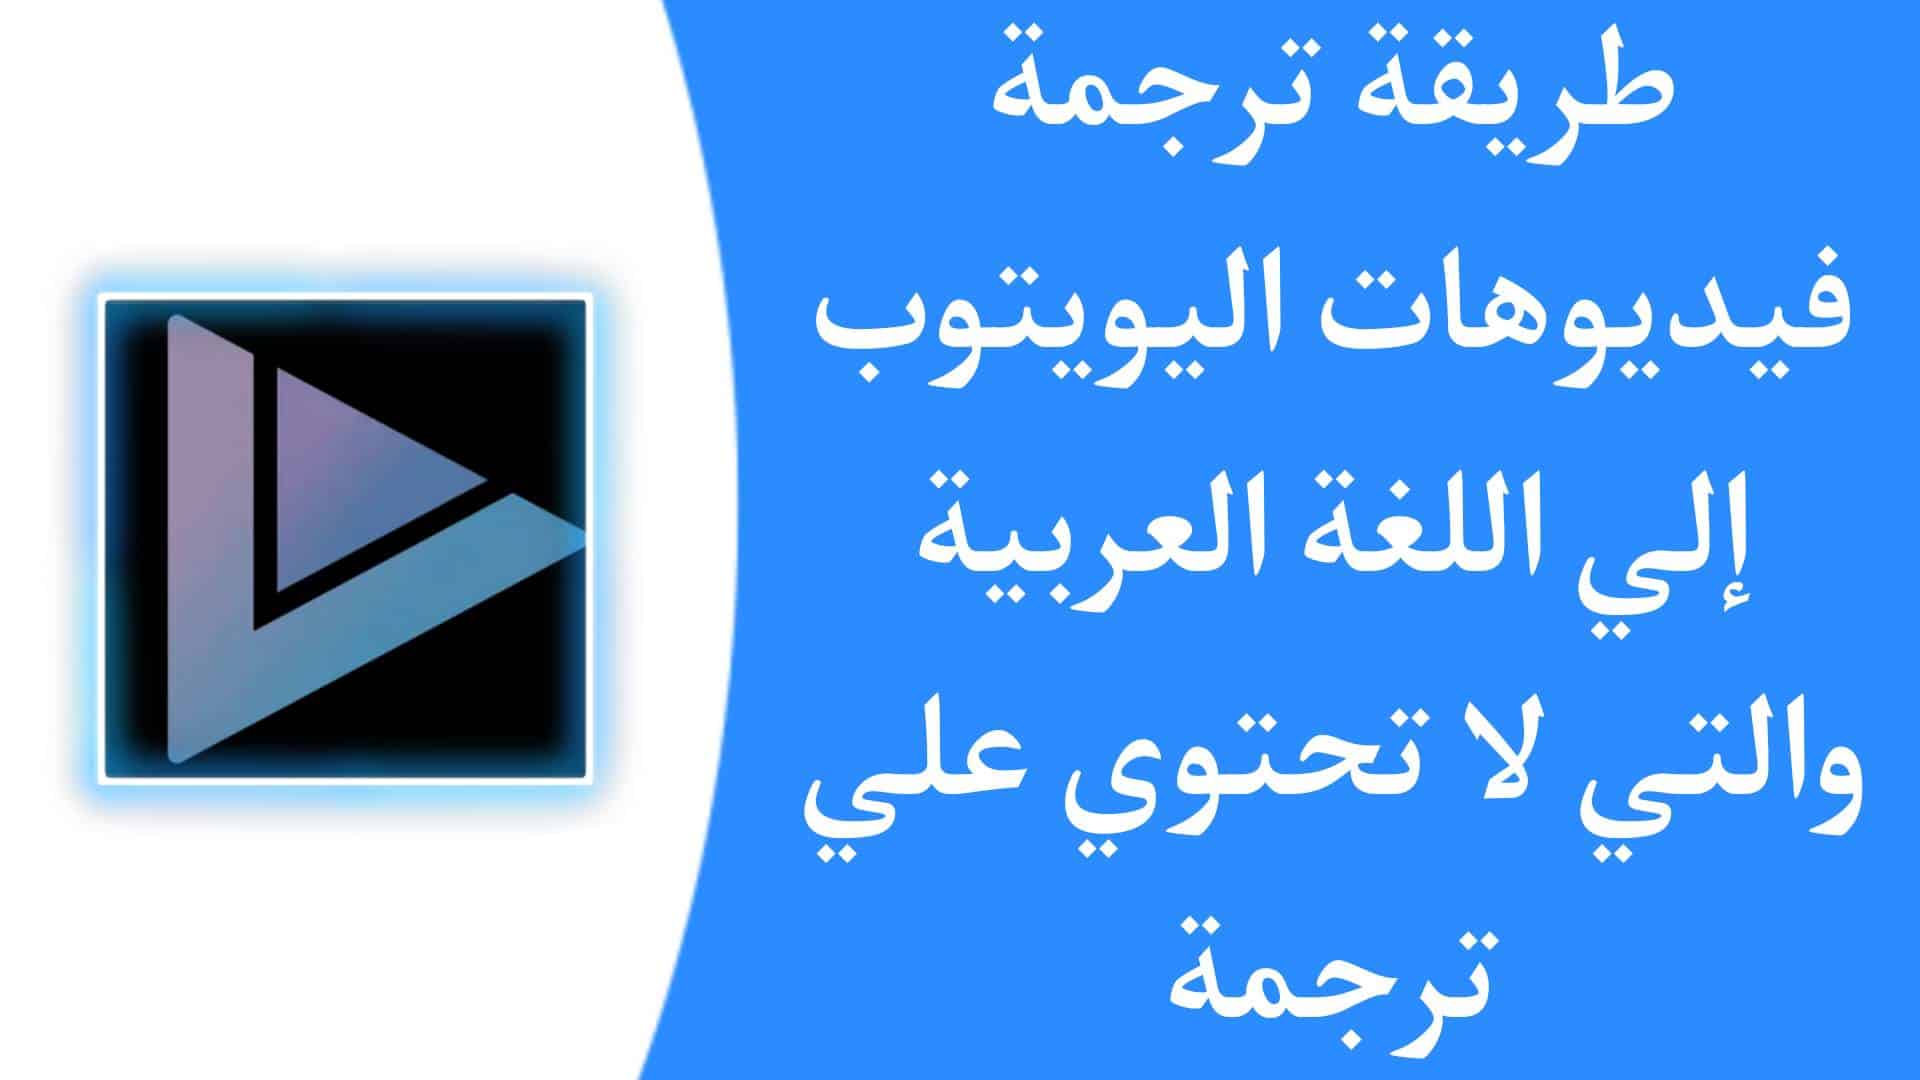 طريقة ترجمة فيديوهات يوتيوب الى العربية